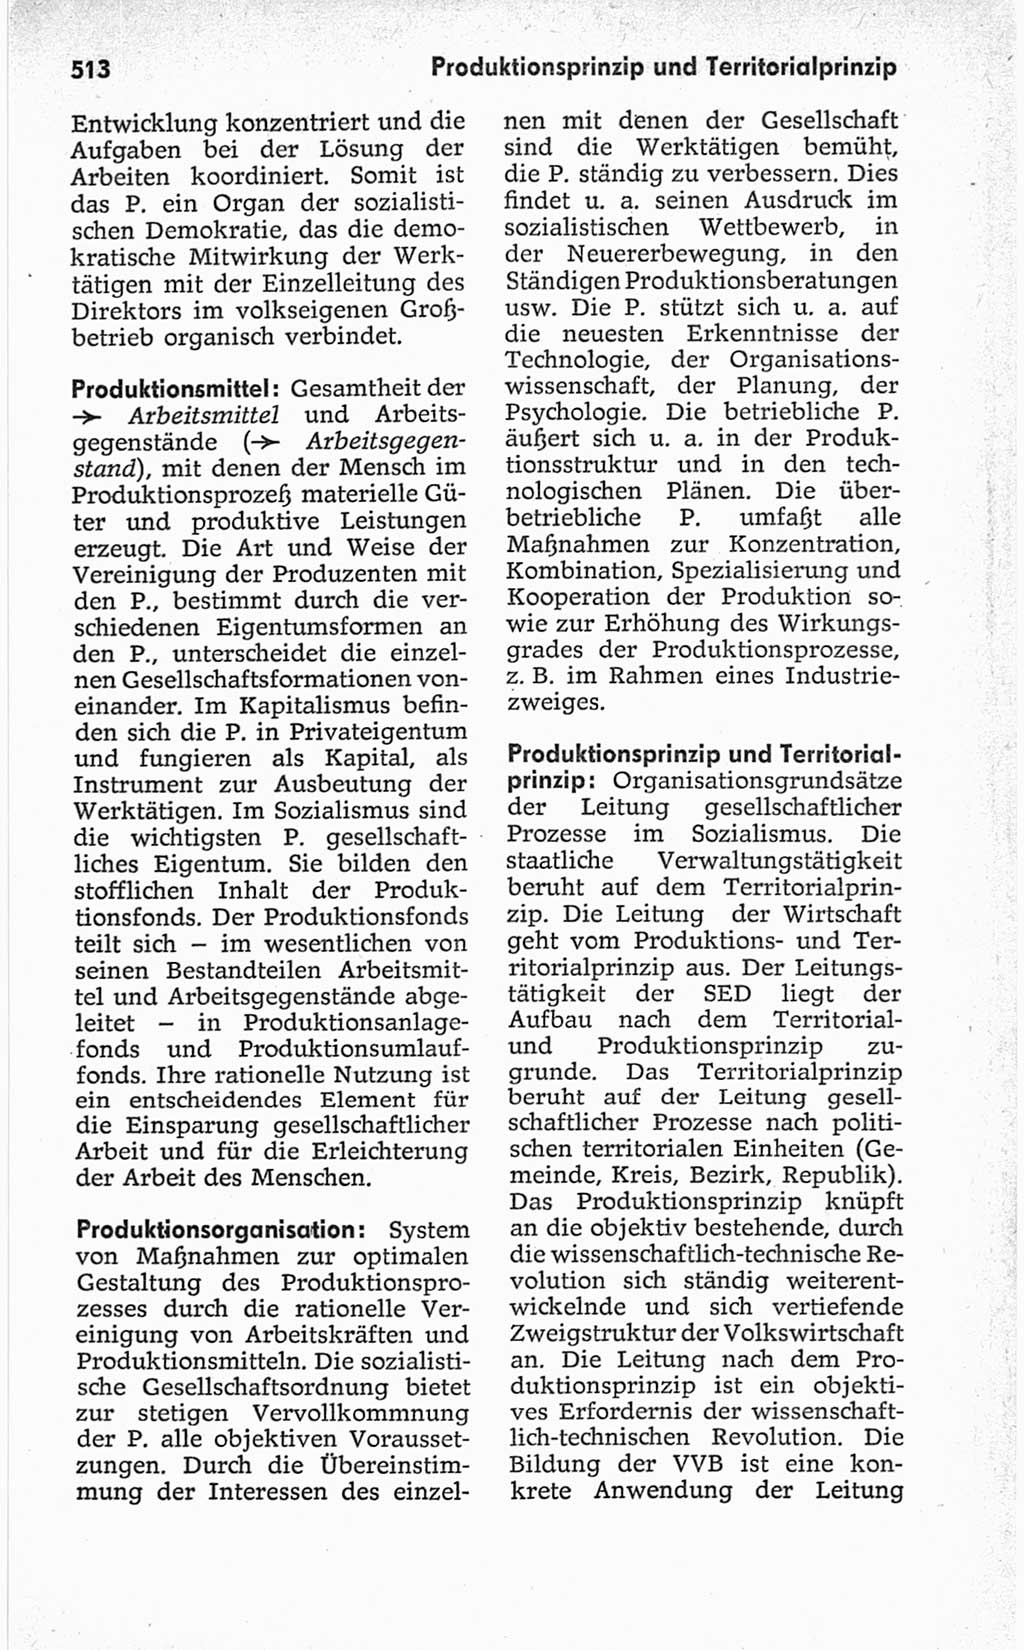 Kleines politisches Wörterbuch [Deutsche Demokratische Republik (DDR)] 1967, Seite 513 (Kl. pol. Wb. DDR 1967, S. 513)